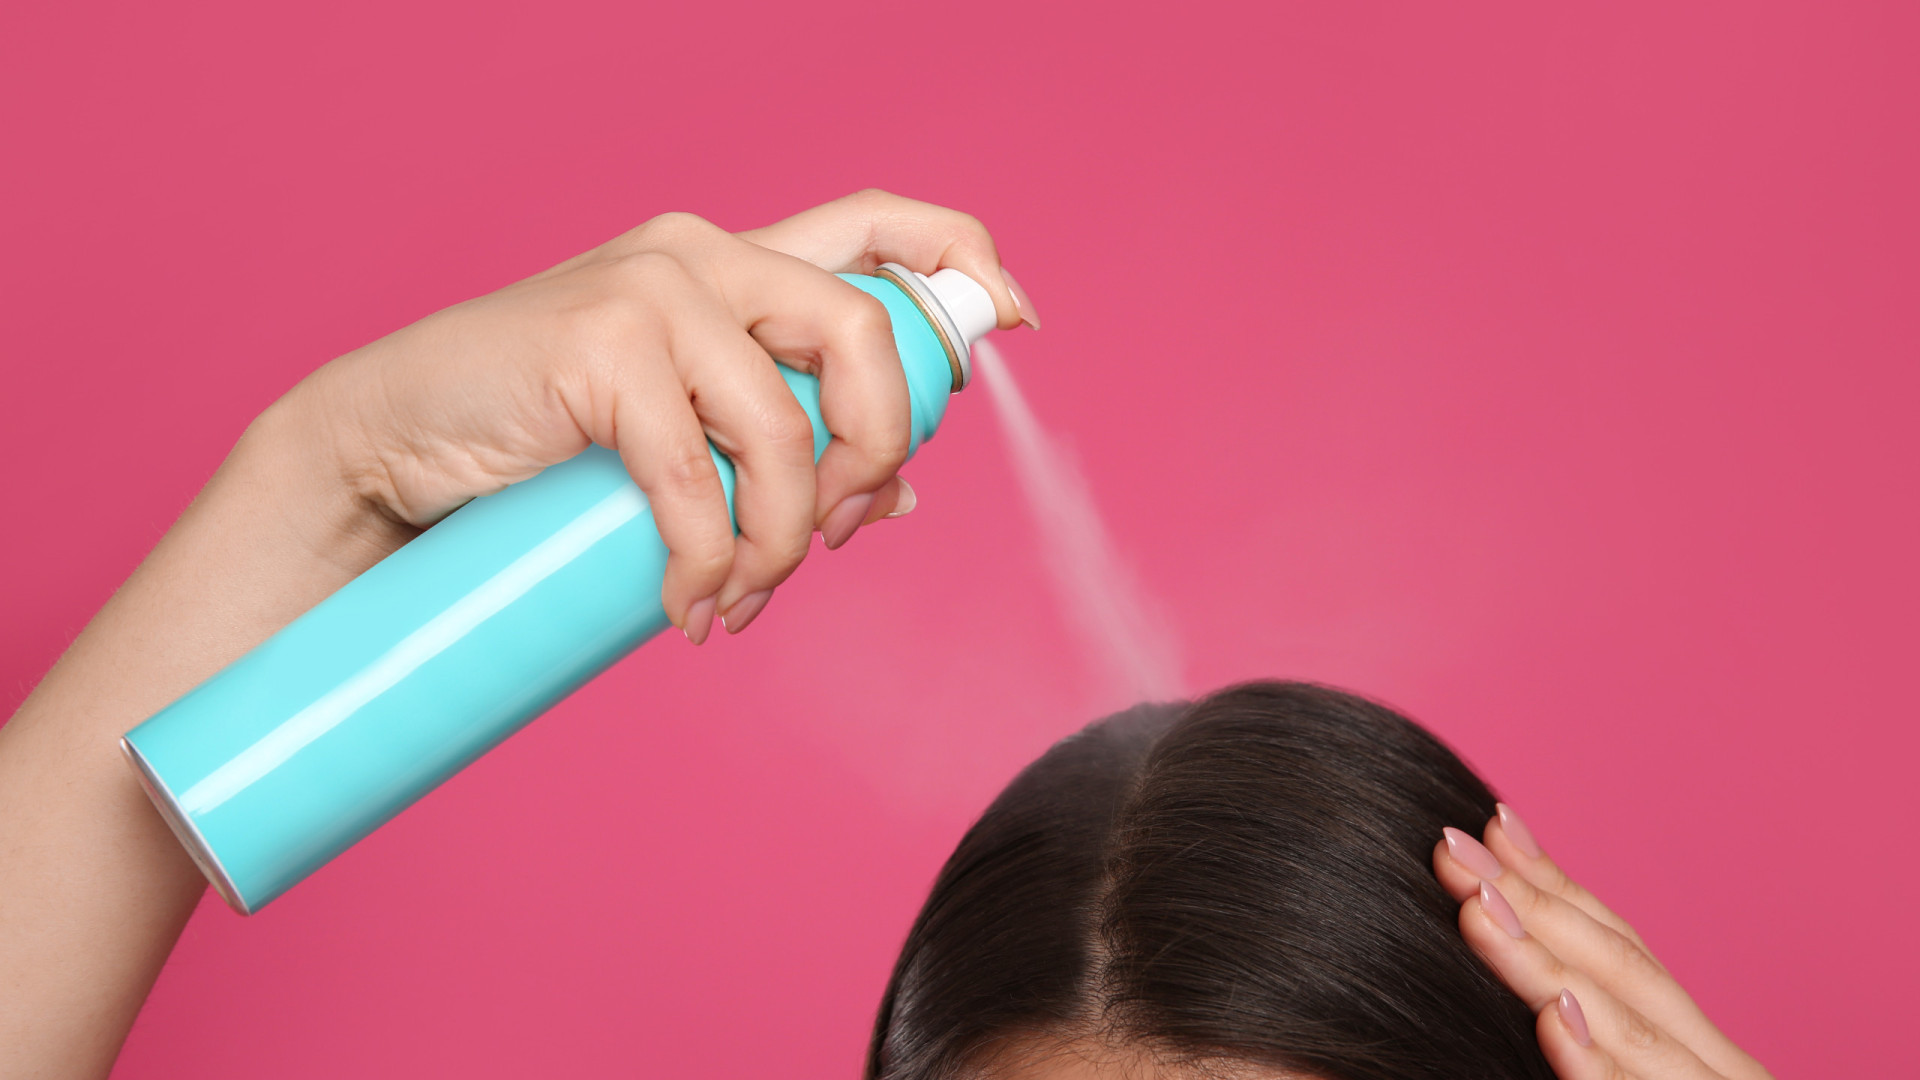 Usa shampoo seco regularmente? Cuidado! Pode causar queda de cabelo